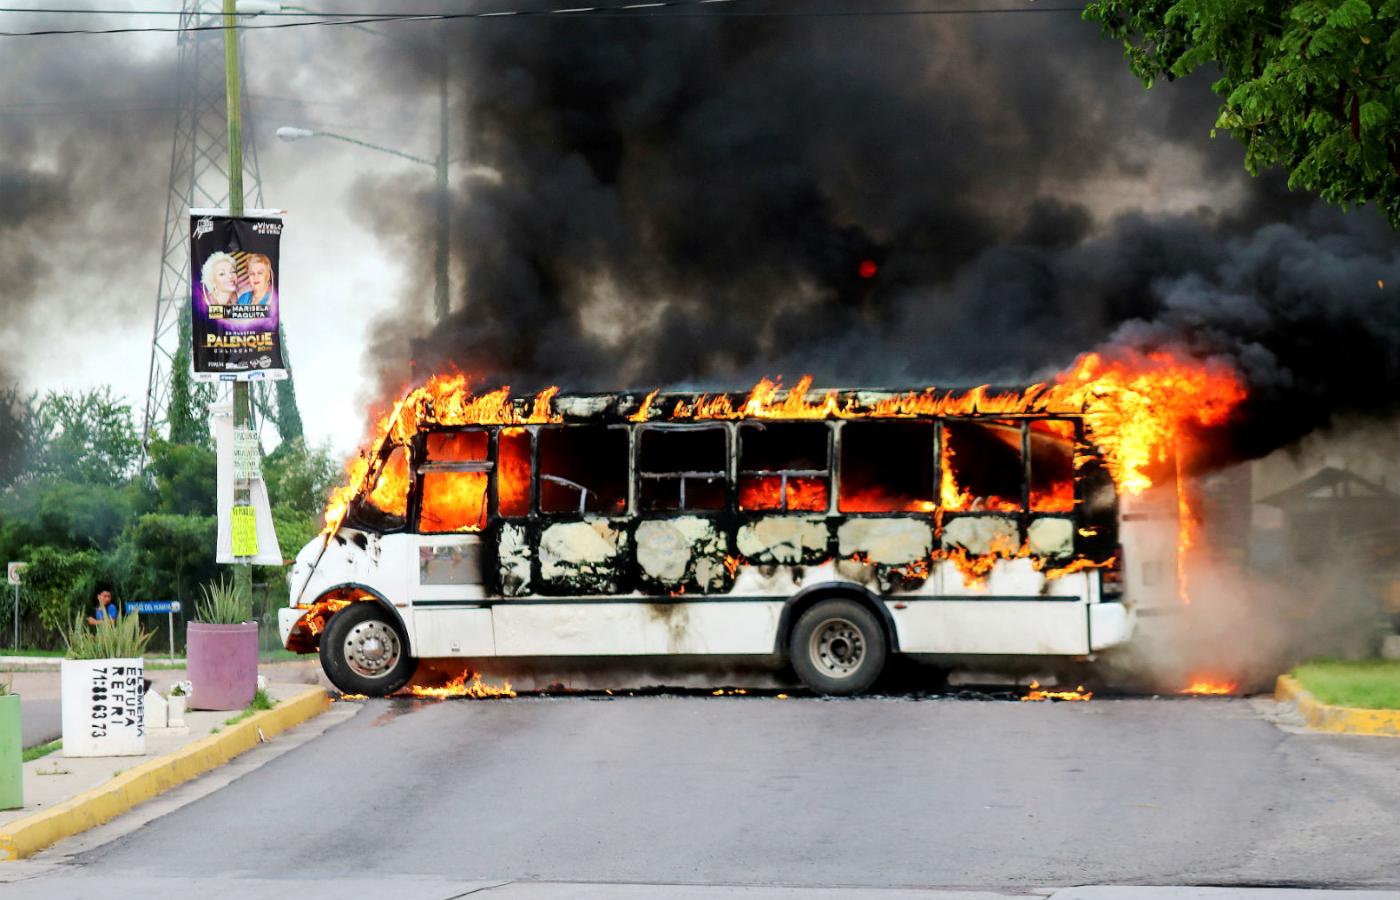 Autobus podpalony przez jeden z karteli narkotykowych podczas zamieszek z władzą po aresztowaniu Ovidio Guzmana, syna słynnego barona narkotykowego El Chapo